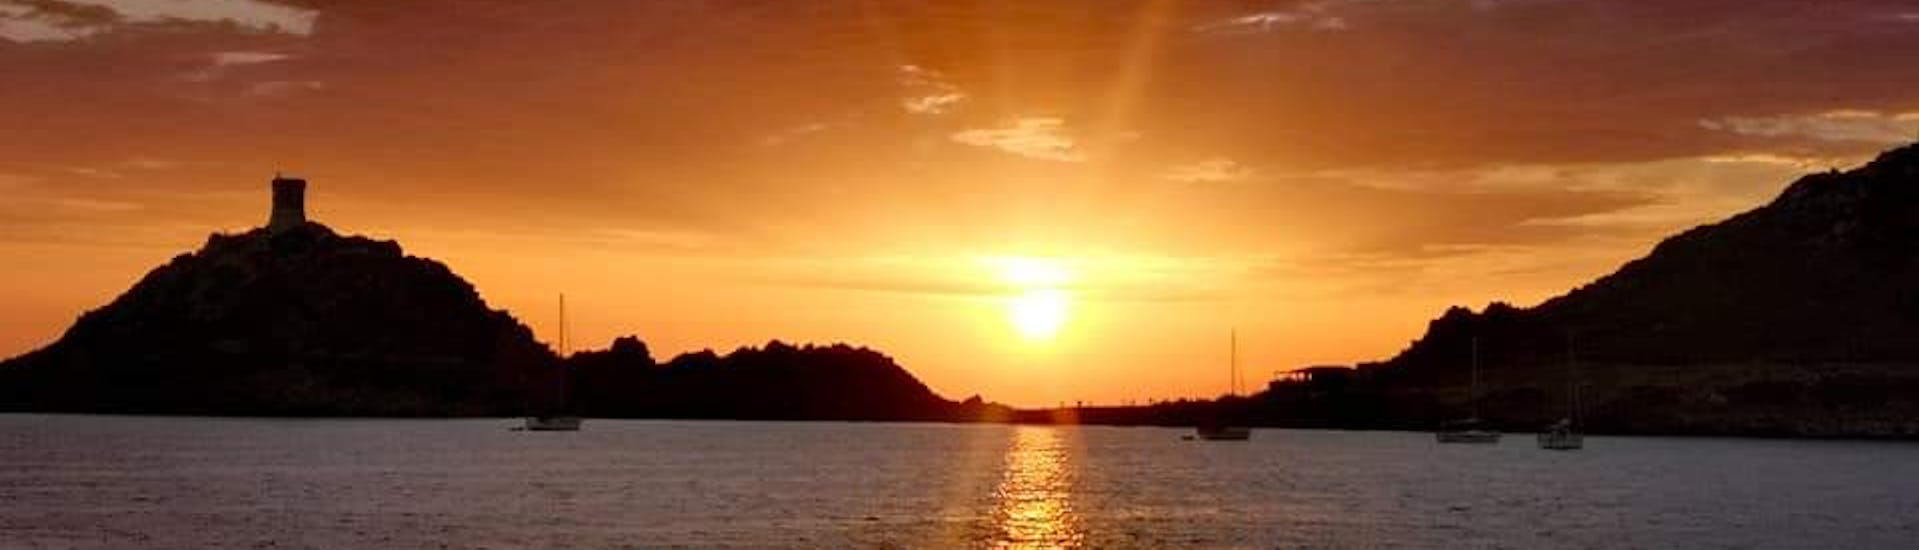 Vue du coucher de soleil dans les îles Sanguinaires pendant l'excursion en bateau d'Ajaccio aux îles Sanguinaires avec apéritif.